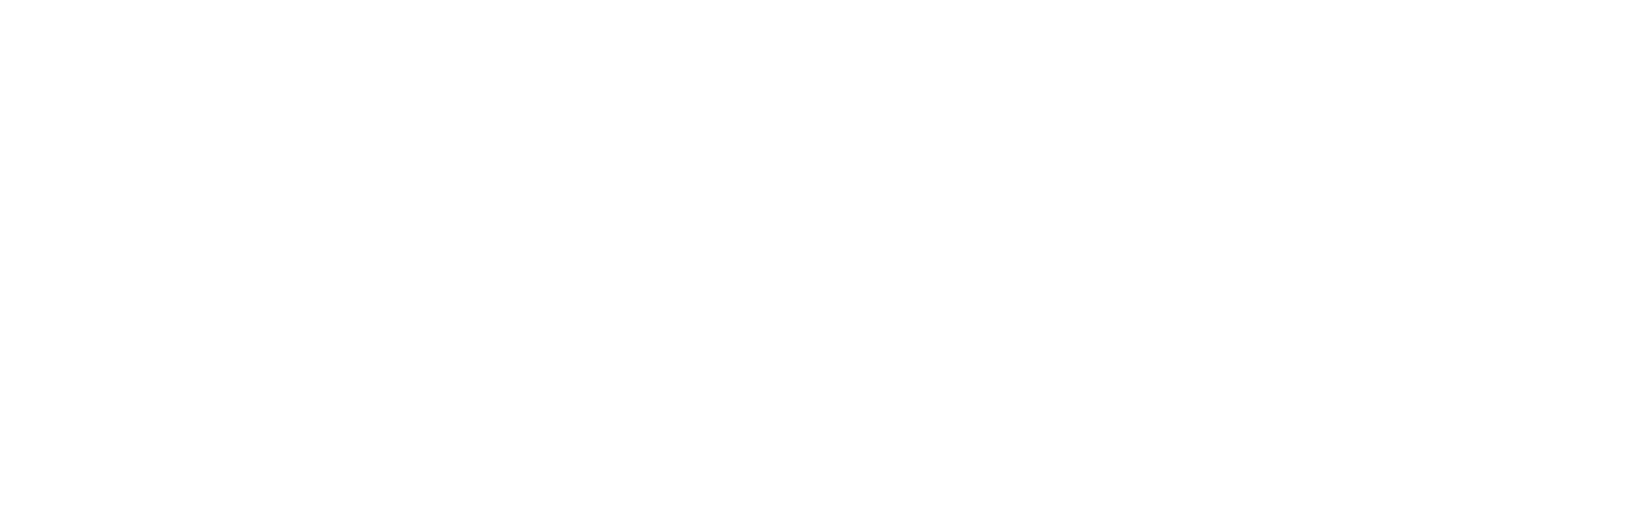 azure-logo-white